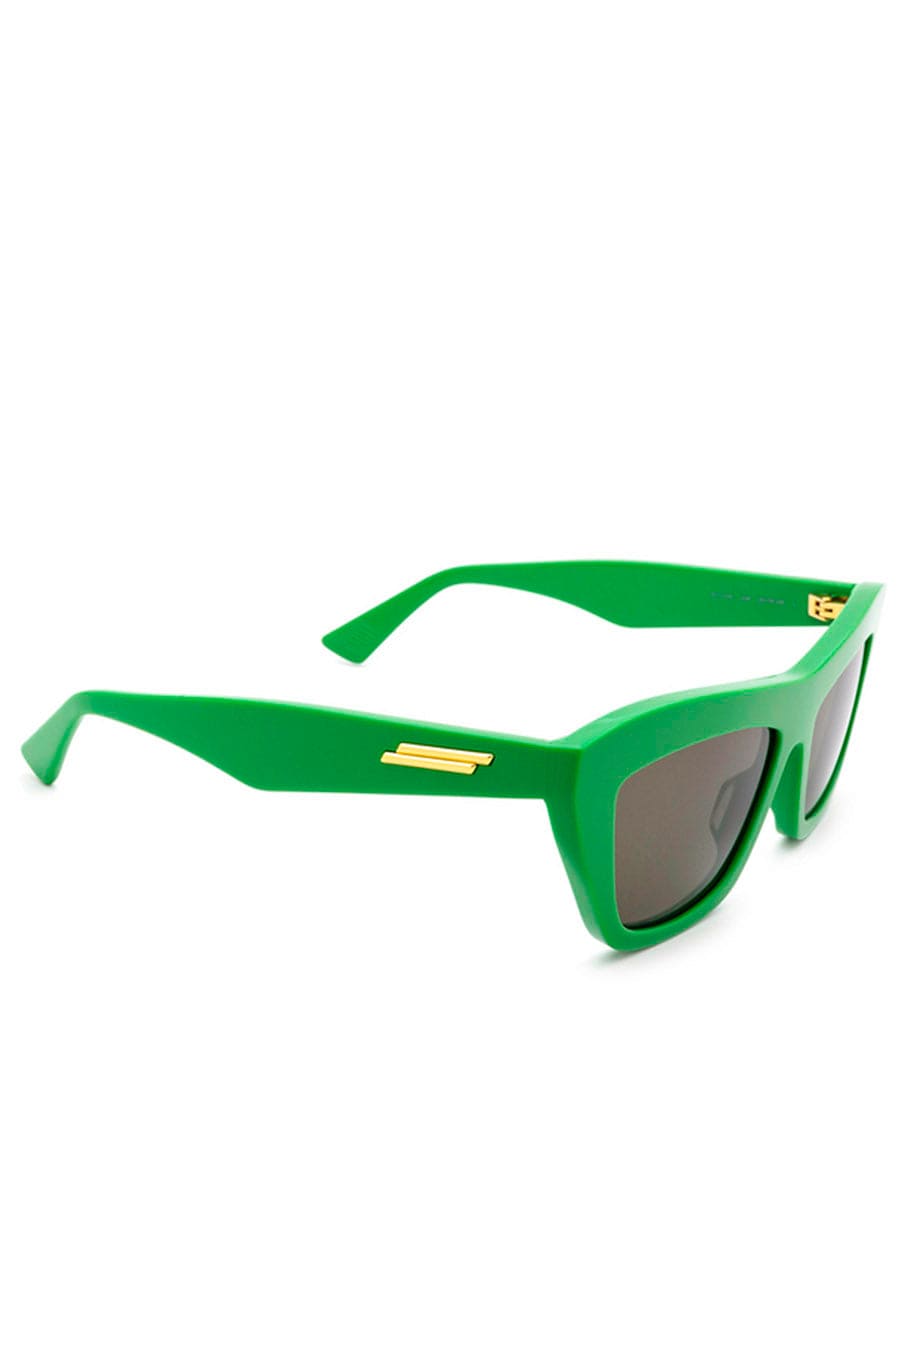 Soft cat eye round sunglasses Bottega Veneta BV 1035 col.004 green, Occhiali